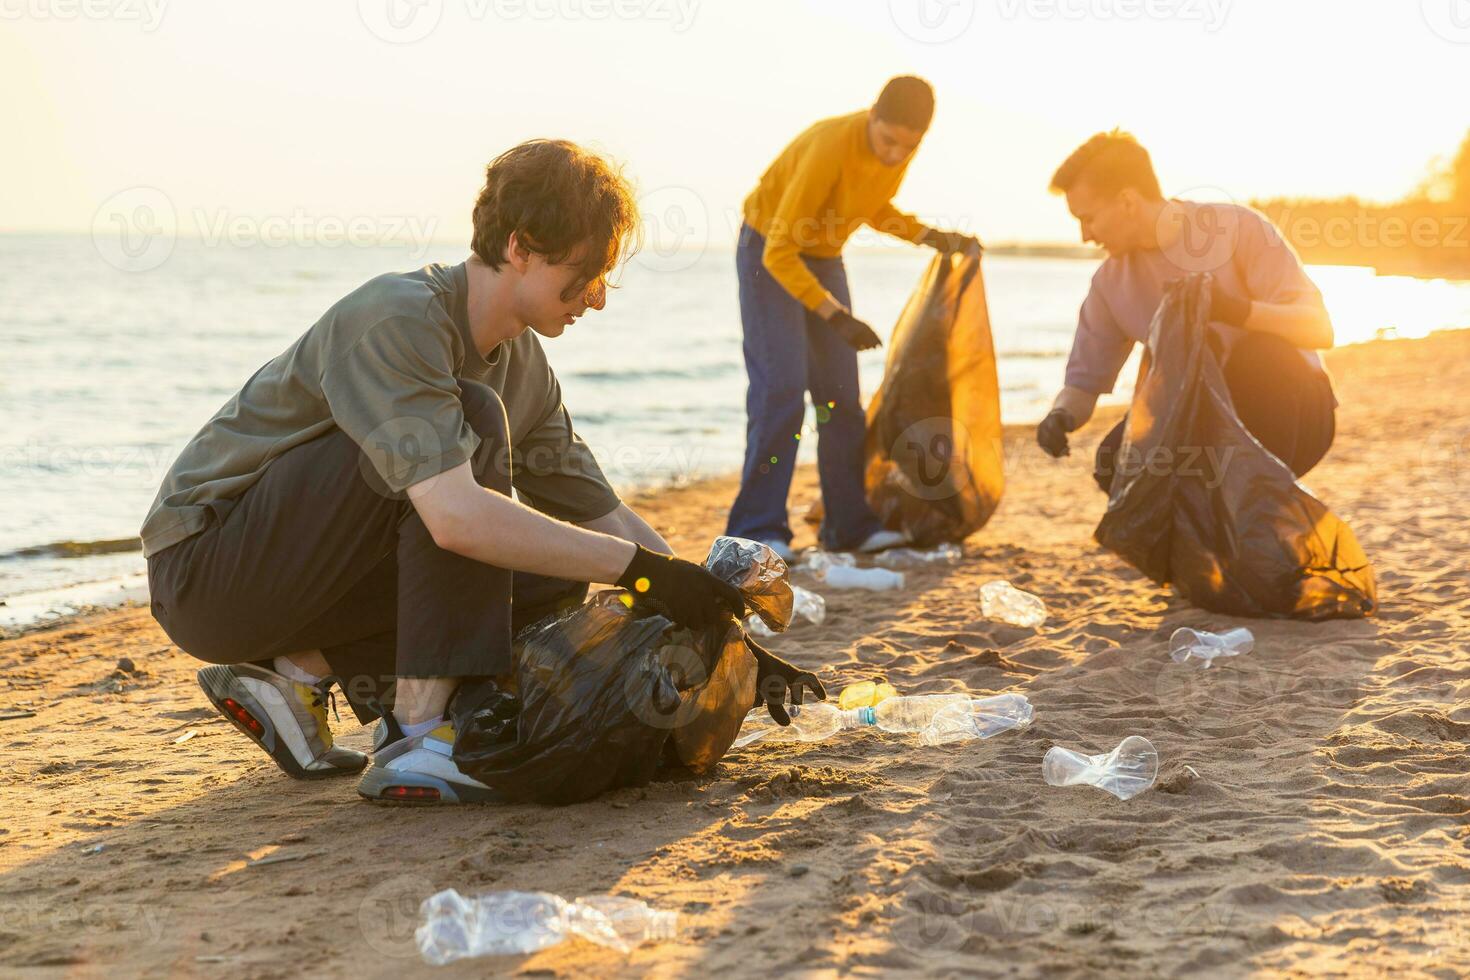 Terre journée. bénévoles militants équipe recueille des ordures nettoyage de plage côtier zone. groupe de gens met Plastique poubelle dans des ordures Sacs sur océan rive. environnement conservation. photo